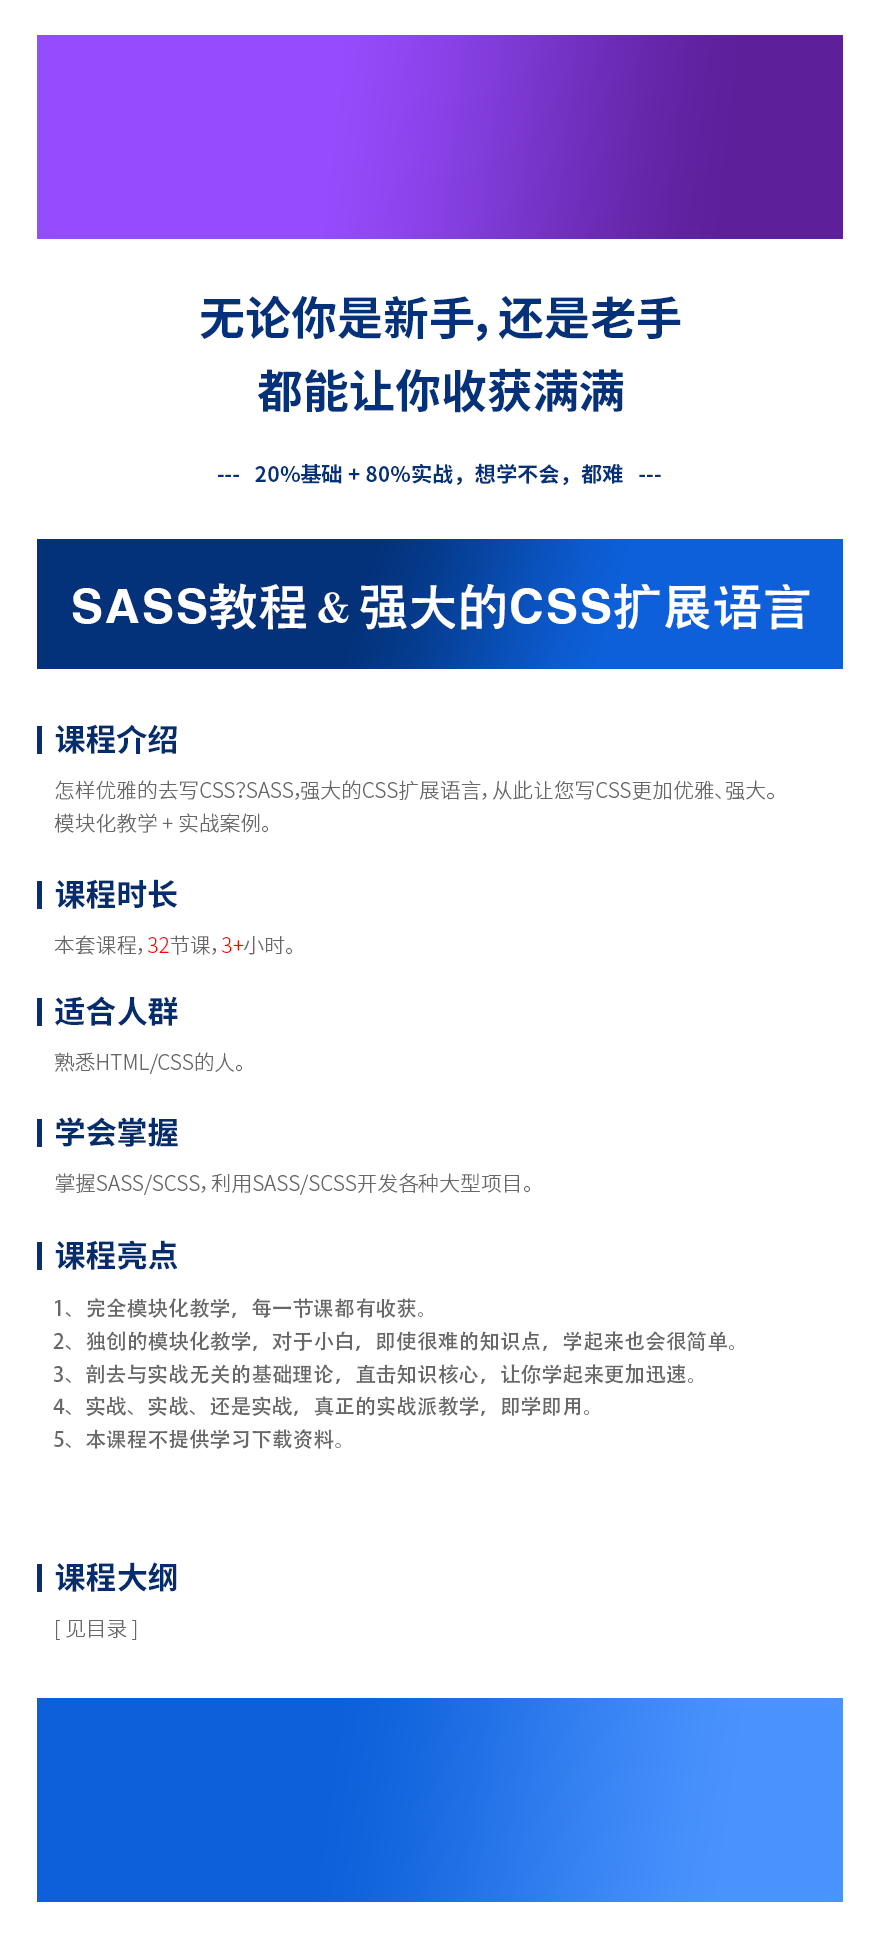 详情页SASS教程 & 最强大的CSS扩展语言.png